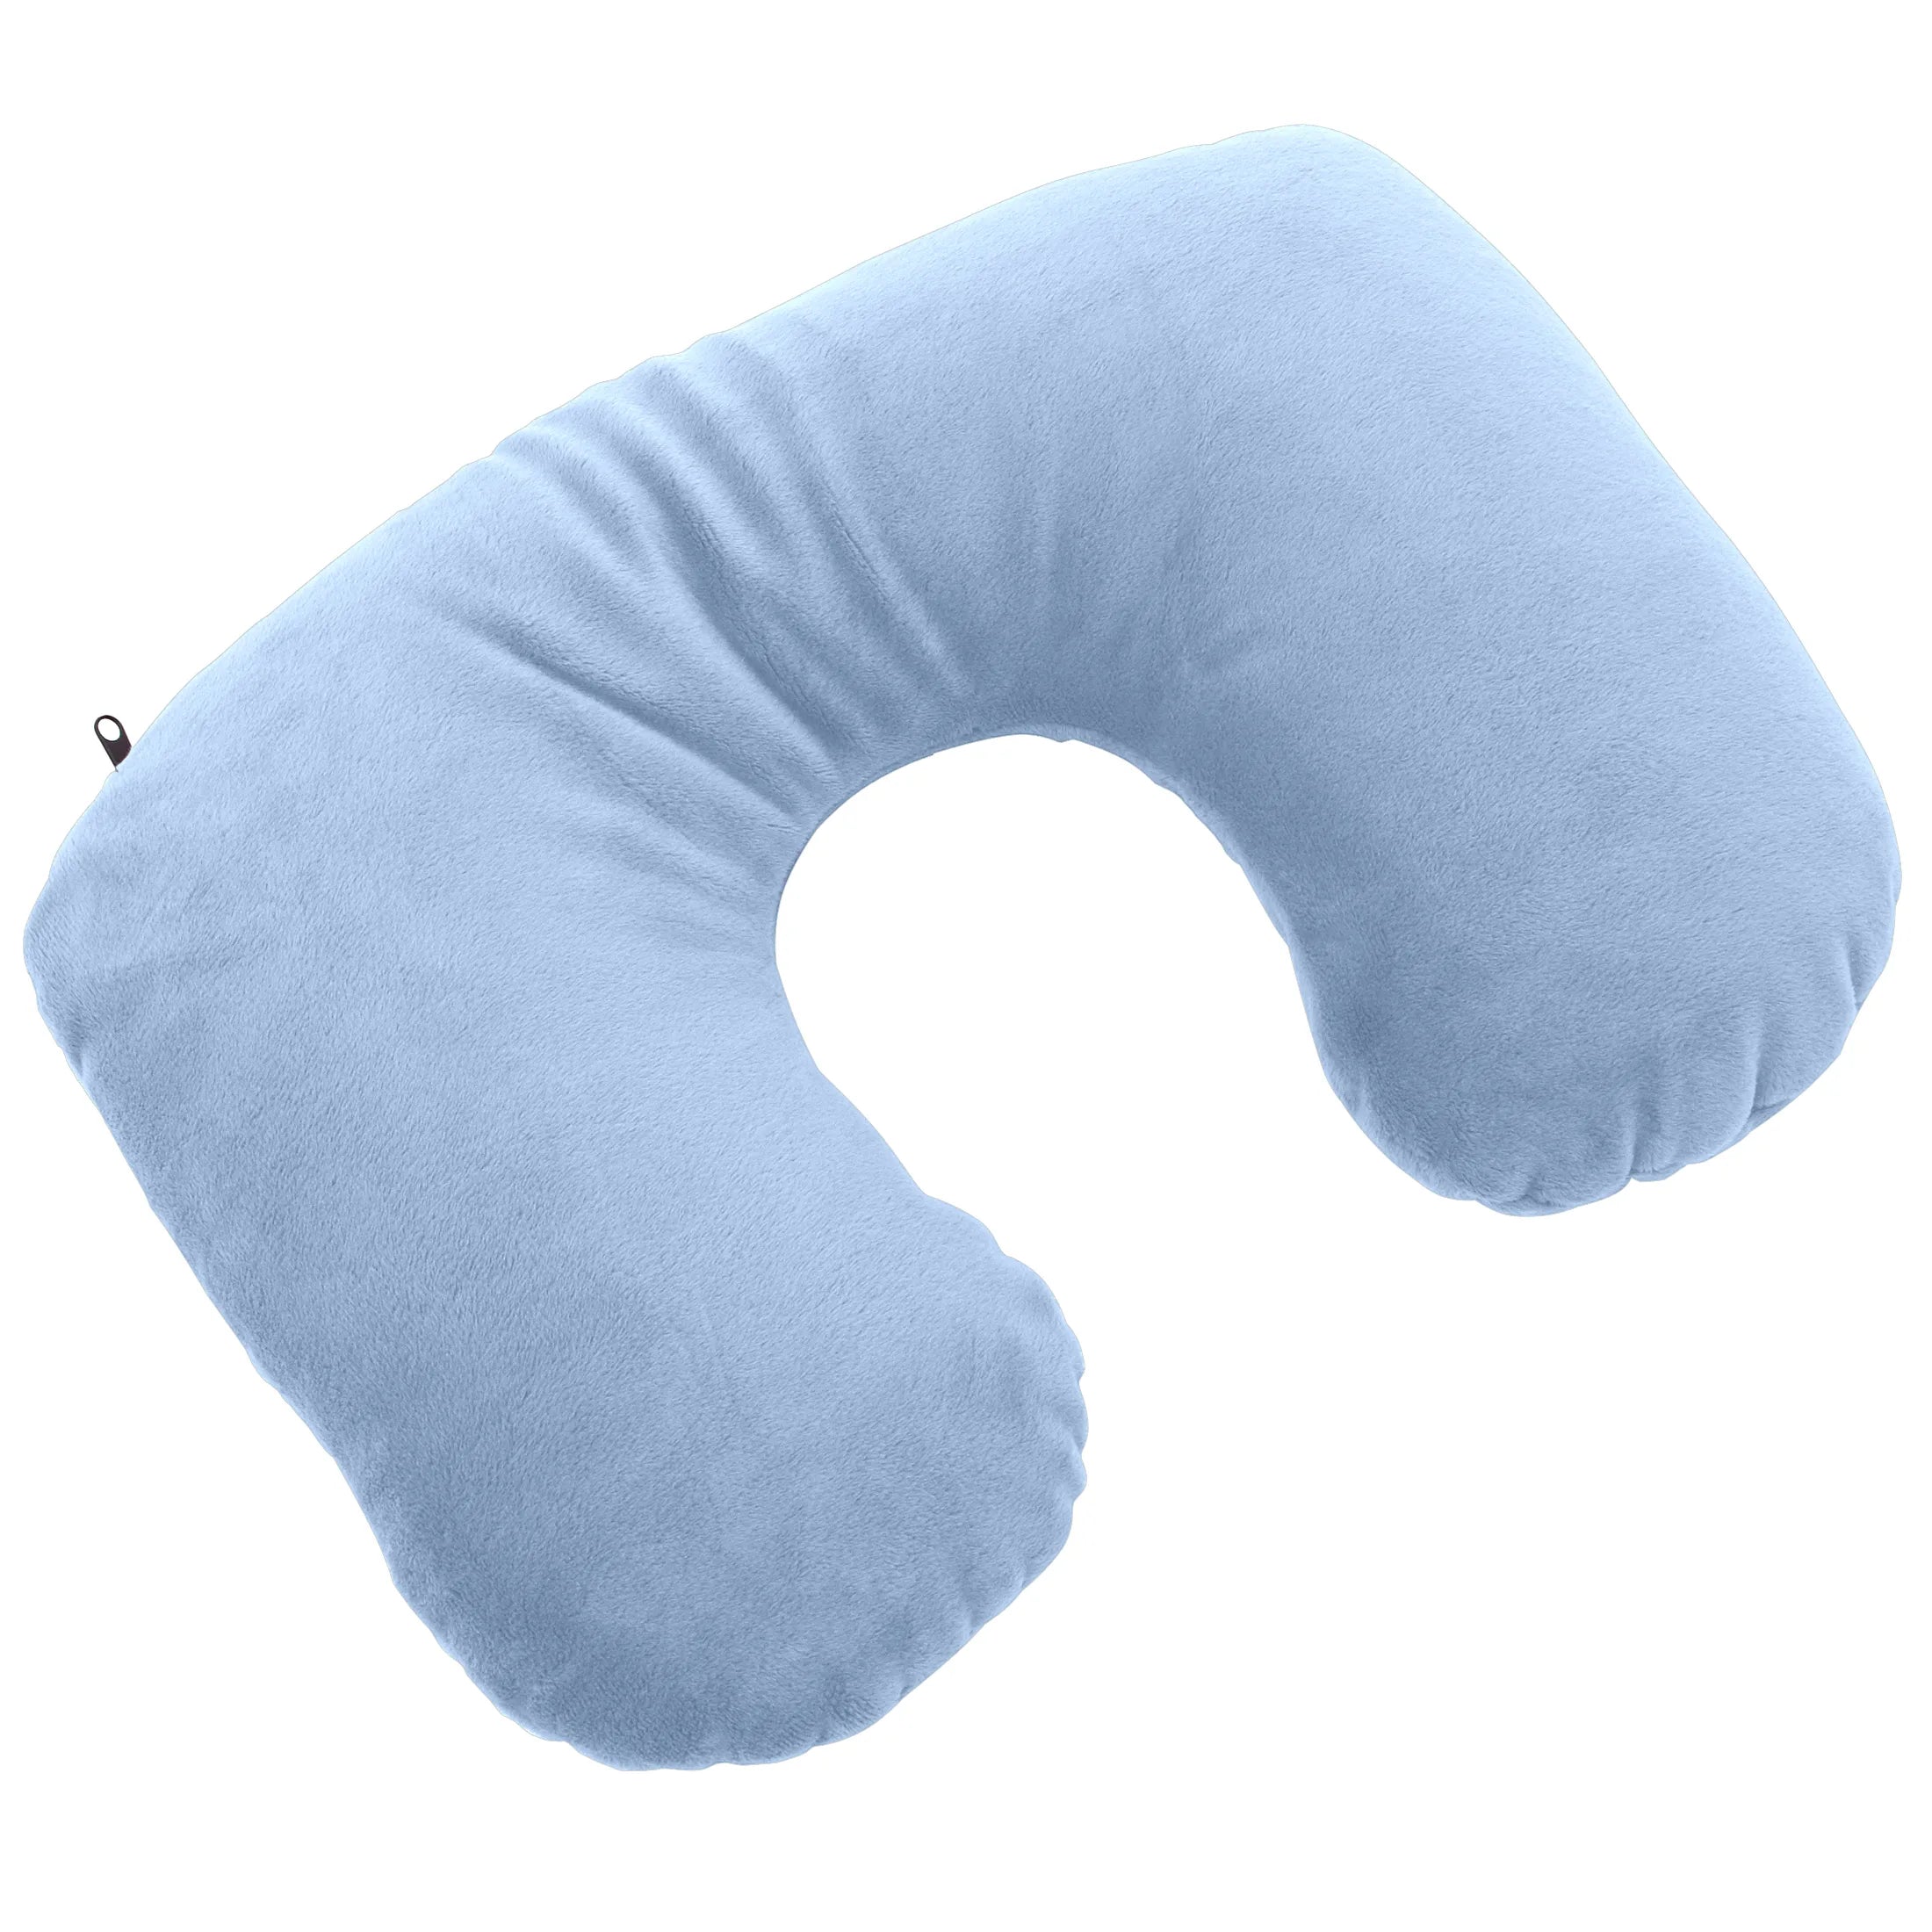 Accessoires de voyage Design Go oreiller cervical transformable en oreiller - bleu clair